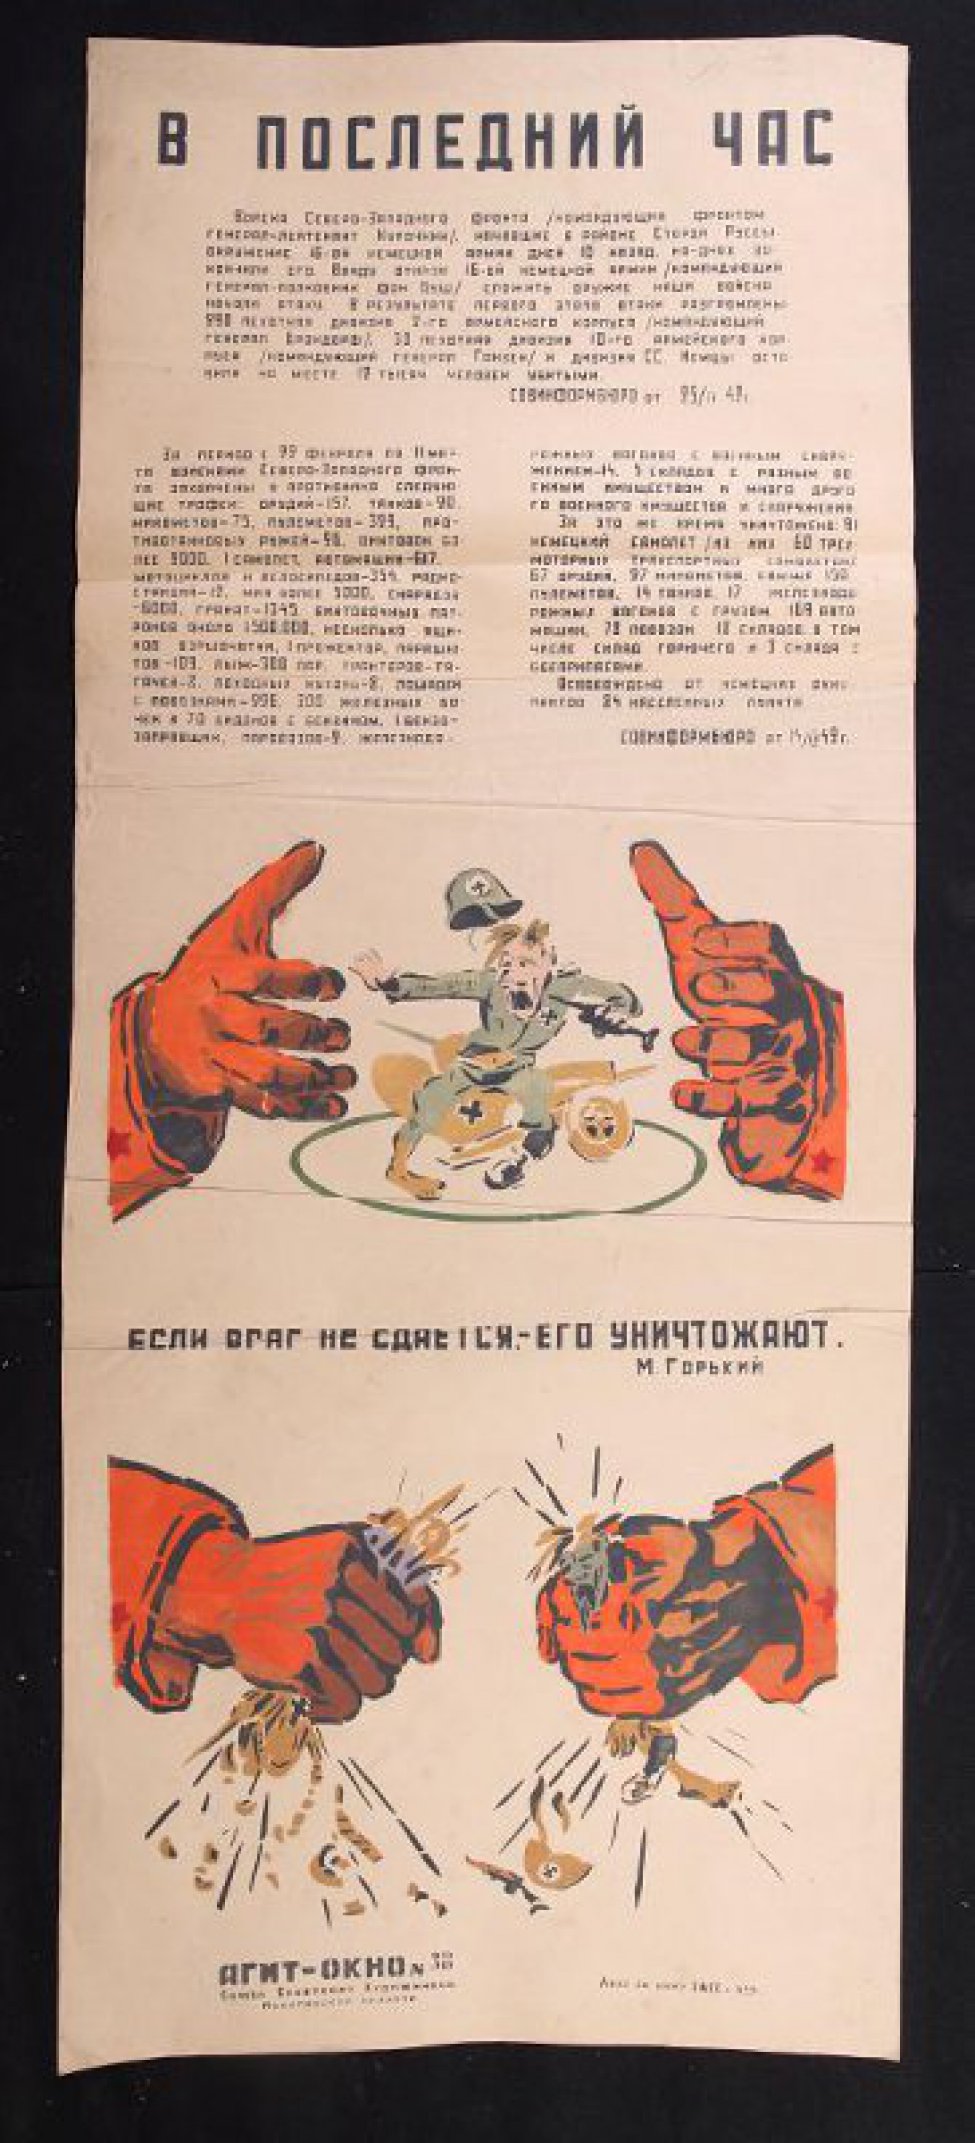 Помещен 1 рисунок, изображено: две руки сжимают сидящего на броневике фашиста, текст: "если враг не сдается - его уничтожают". (Горький).